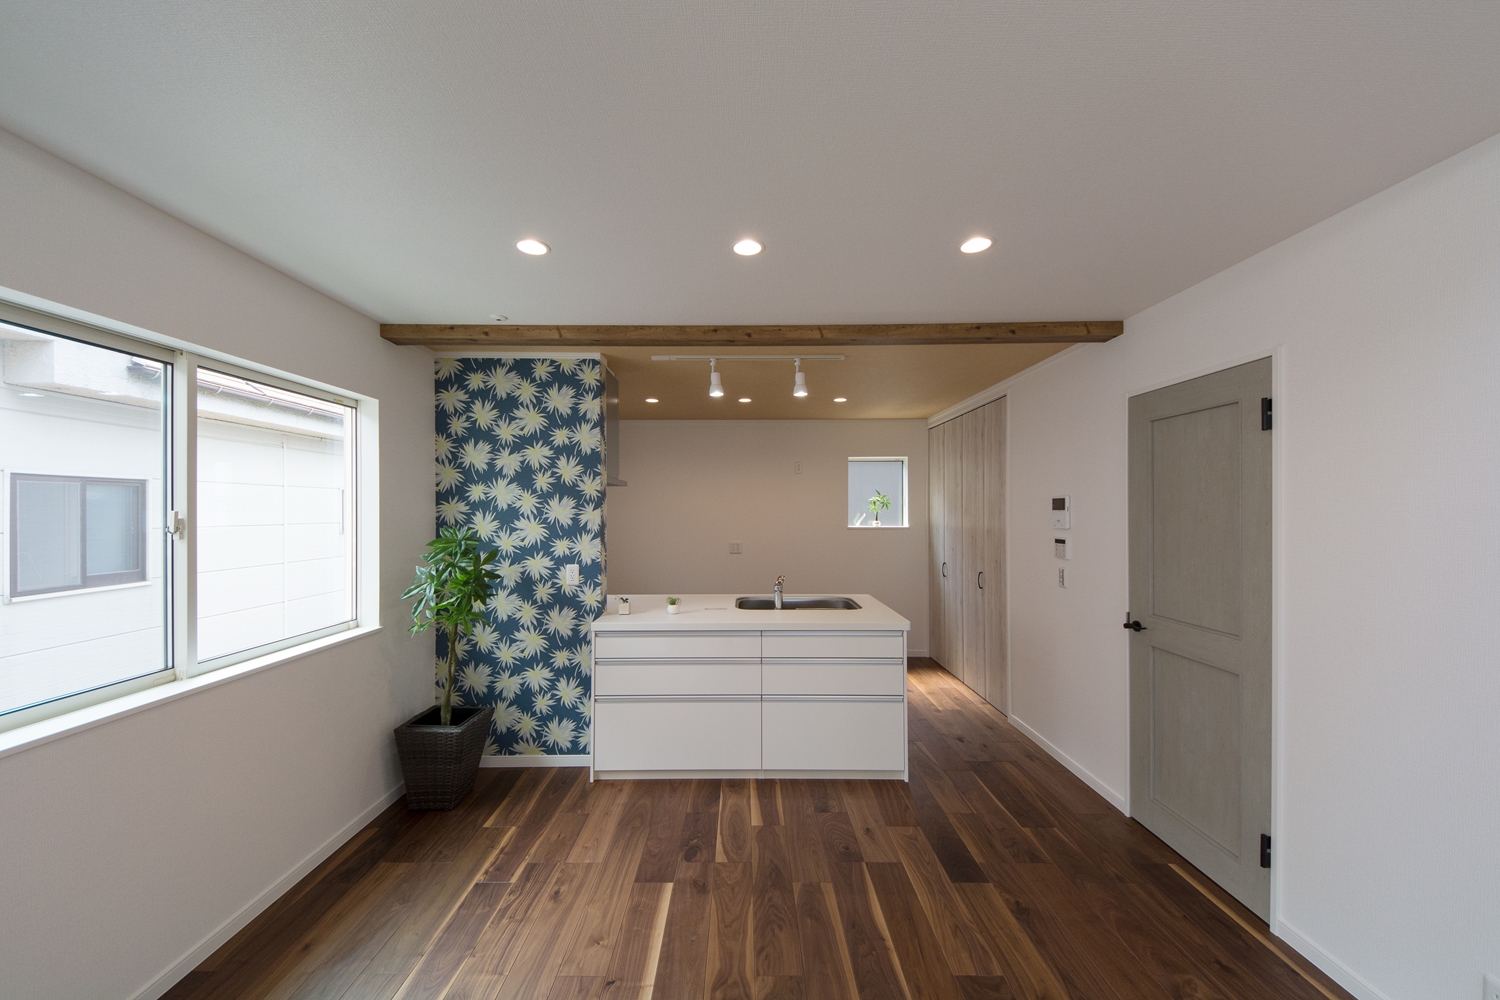 2階LDK/キッチンと壁の白をベースに、フローリングと化粧梁の深い色味がメリハリを与えています。建具や花柄クロスがポイントになってハイセンスな空間に。